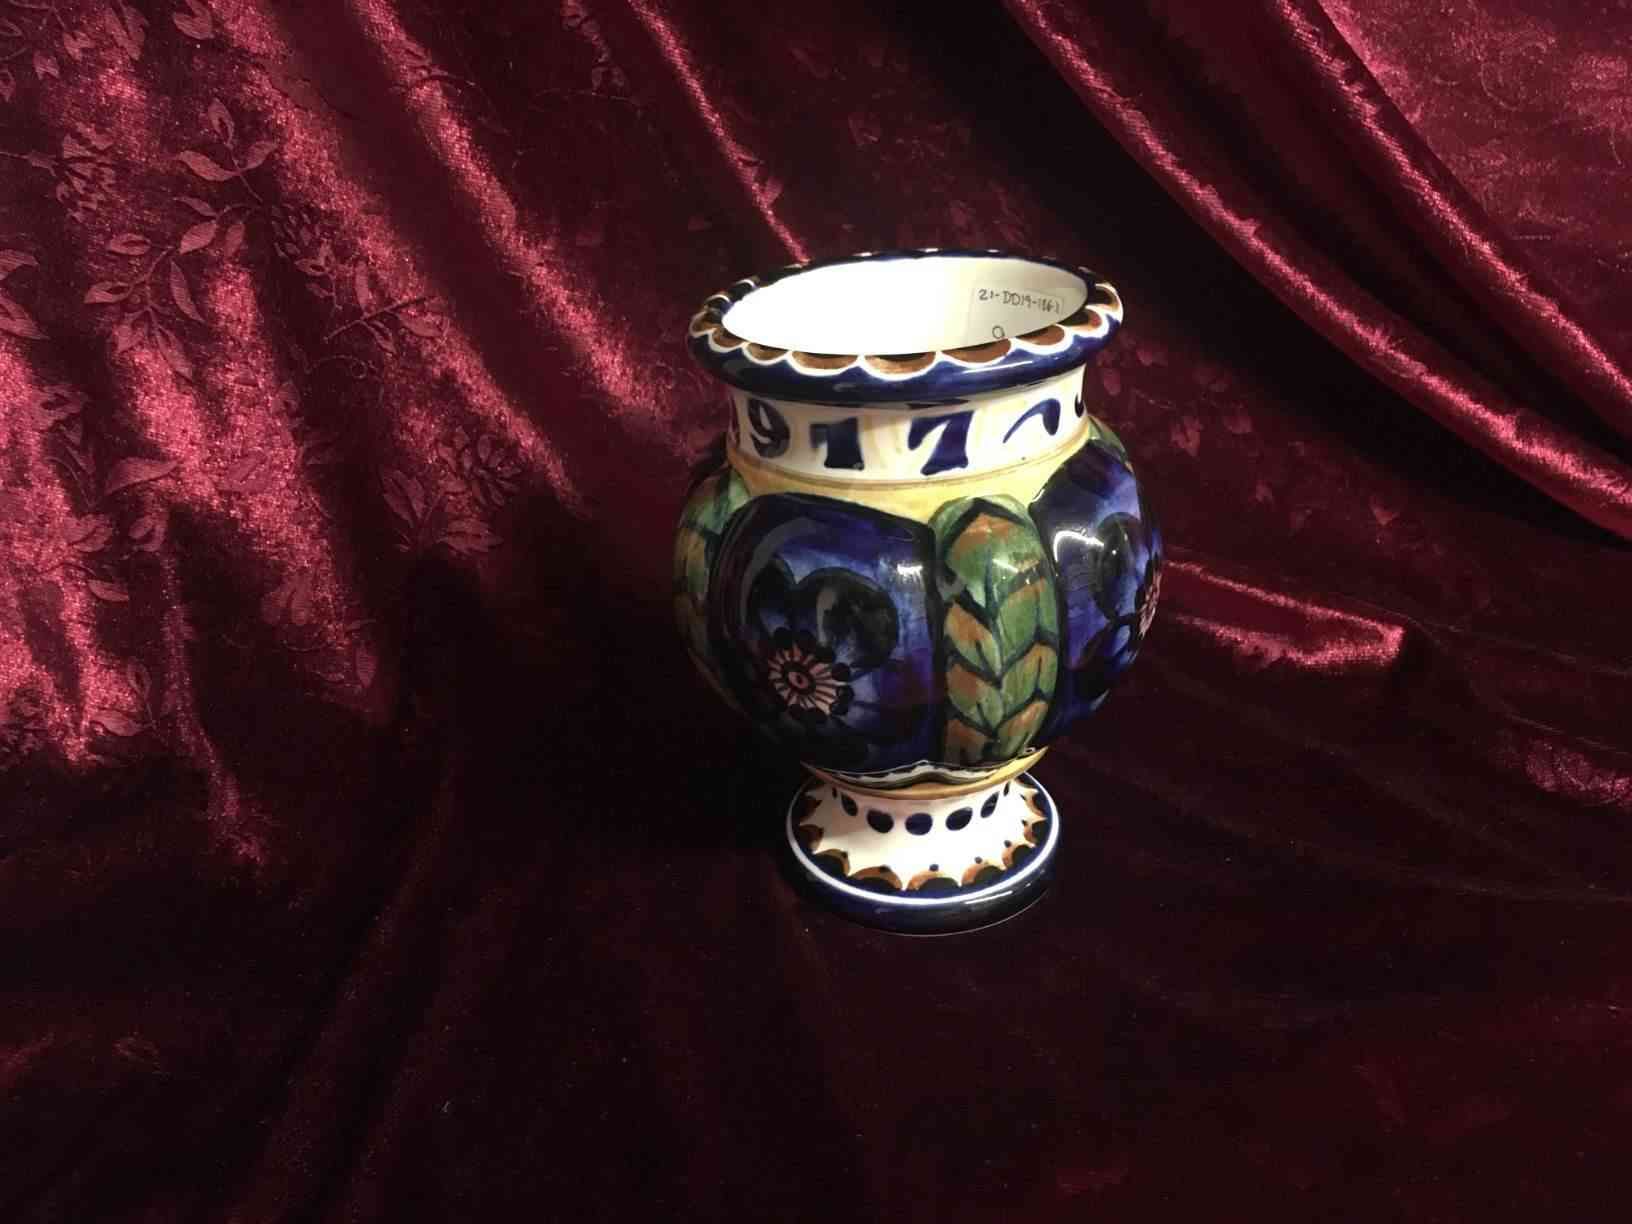 Aluminia julevase - Julen 1917, buklet vase med fod og hals, formgivet af Nils Thorsson, dekoreret med blå blomster og gran, i perfekt stand. Pris: 900,- Kr.